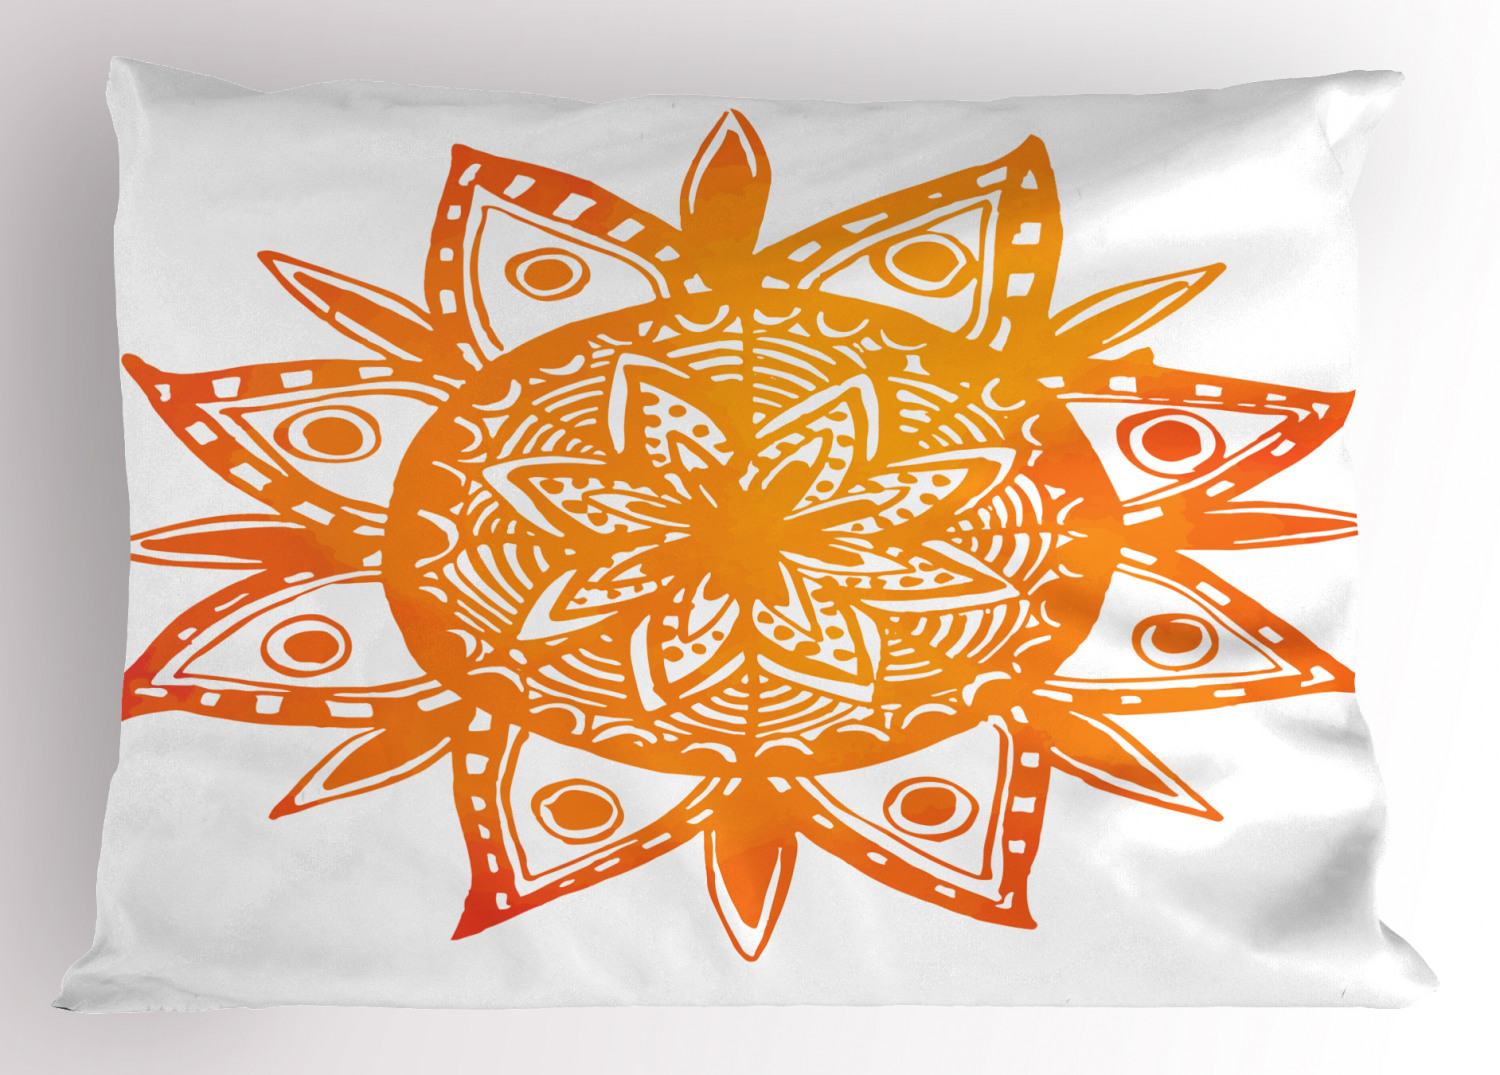 Details about   Warm Colors Pillow Sham Decorative Pillowcase 3 Sizes Bedroom Decor Ambesonne 